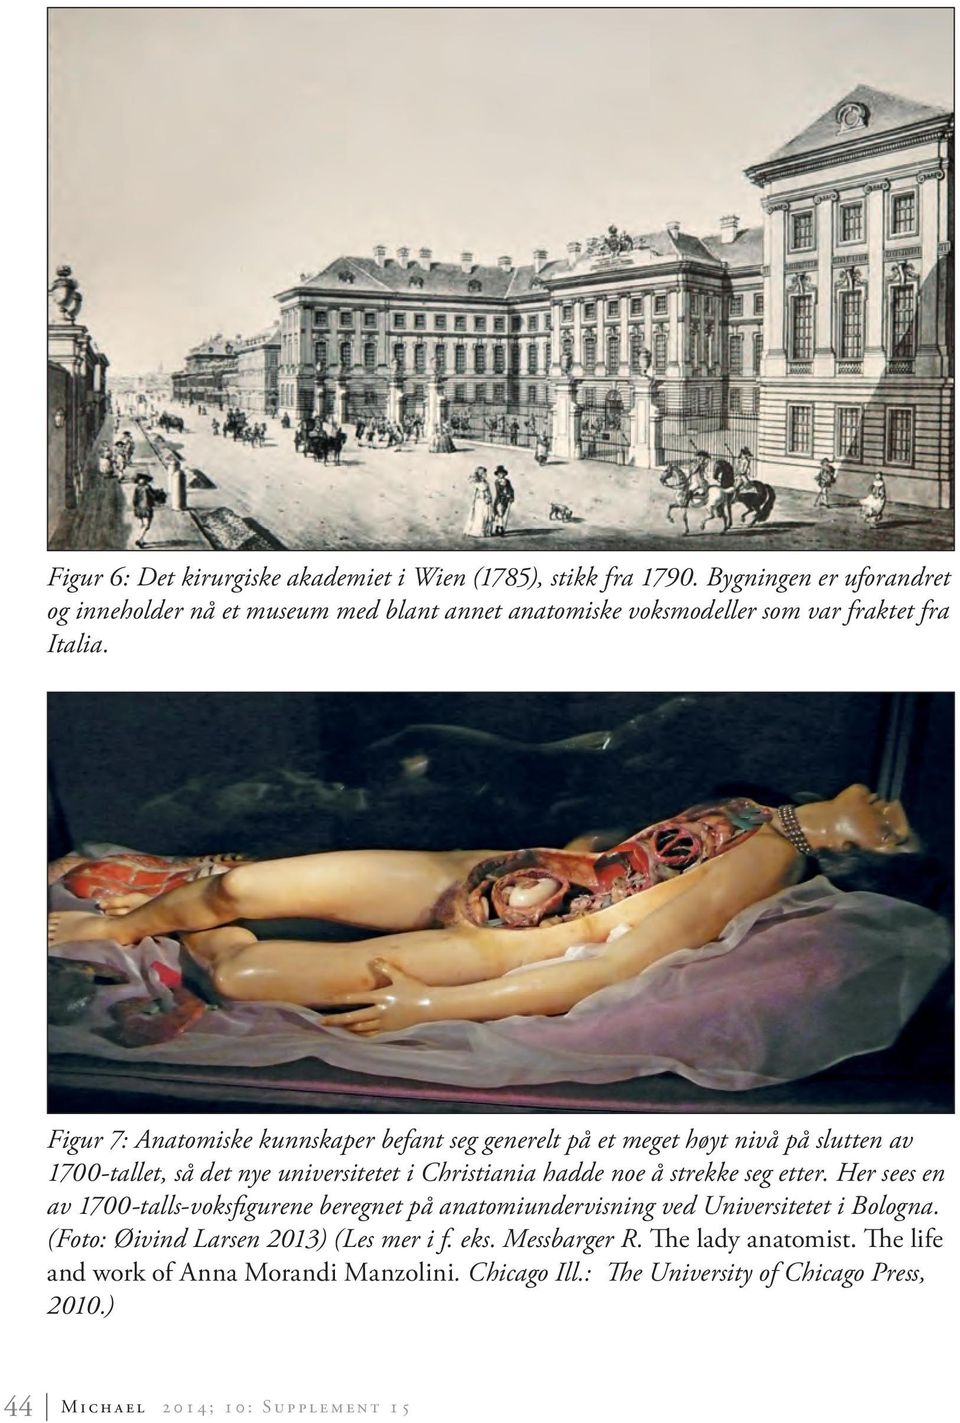 Figur 7: Anatomiske kunnskaper befant seg generelt på et meget høyt nivå på slutten av 1700-tallet, så det nye universitetet i Christiania hadde noe å strekke